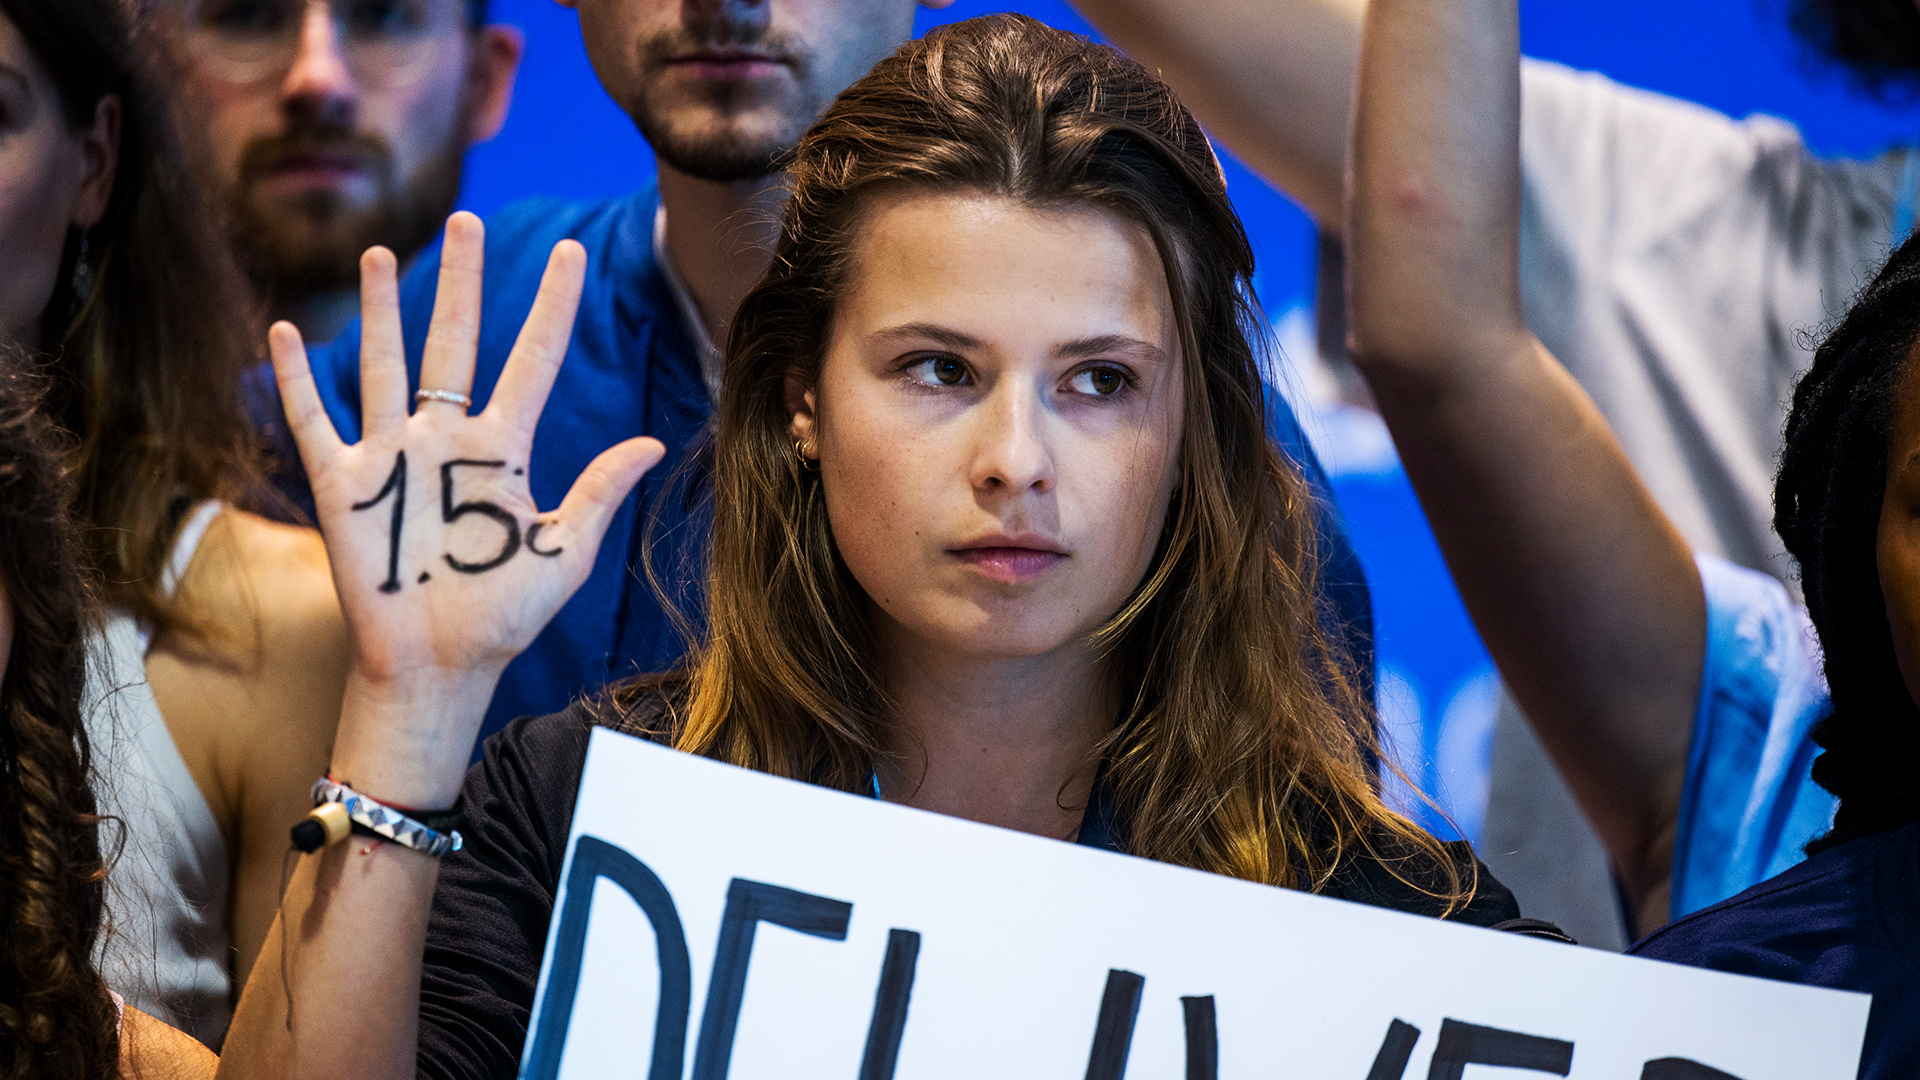 Luisa Neubauer auf der COP27: Sie hat sich "15°C" auf ihre Handfläche geschrieben. | picture alliance/dpa